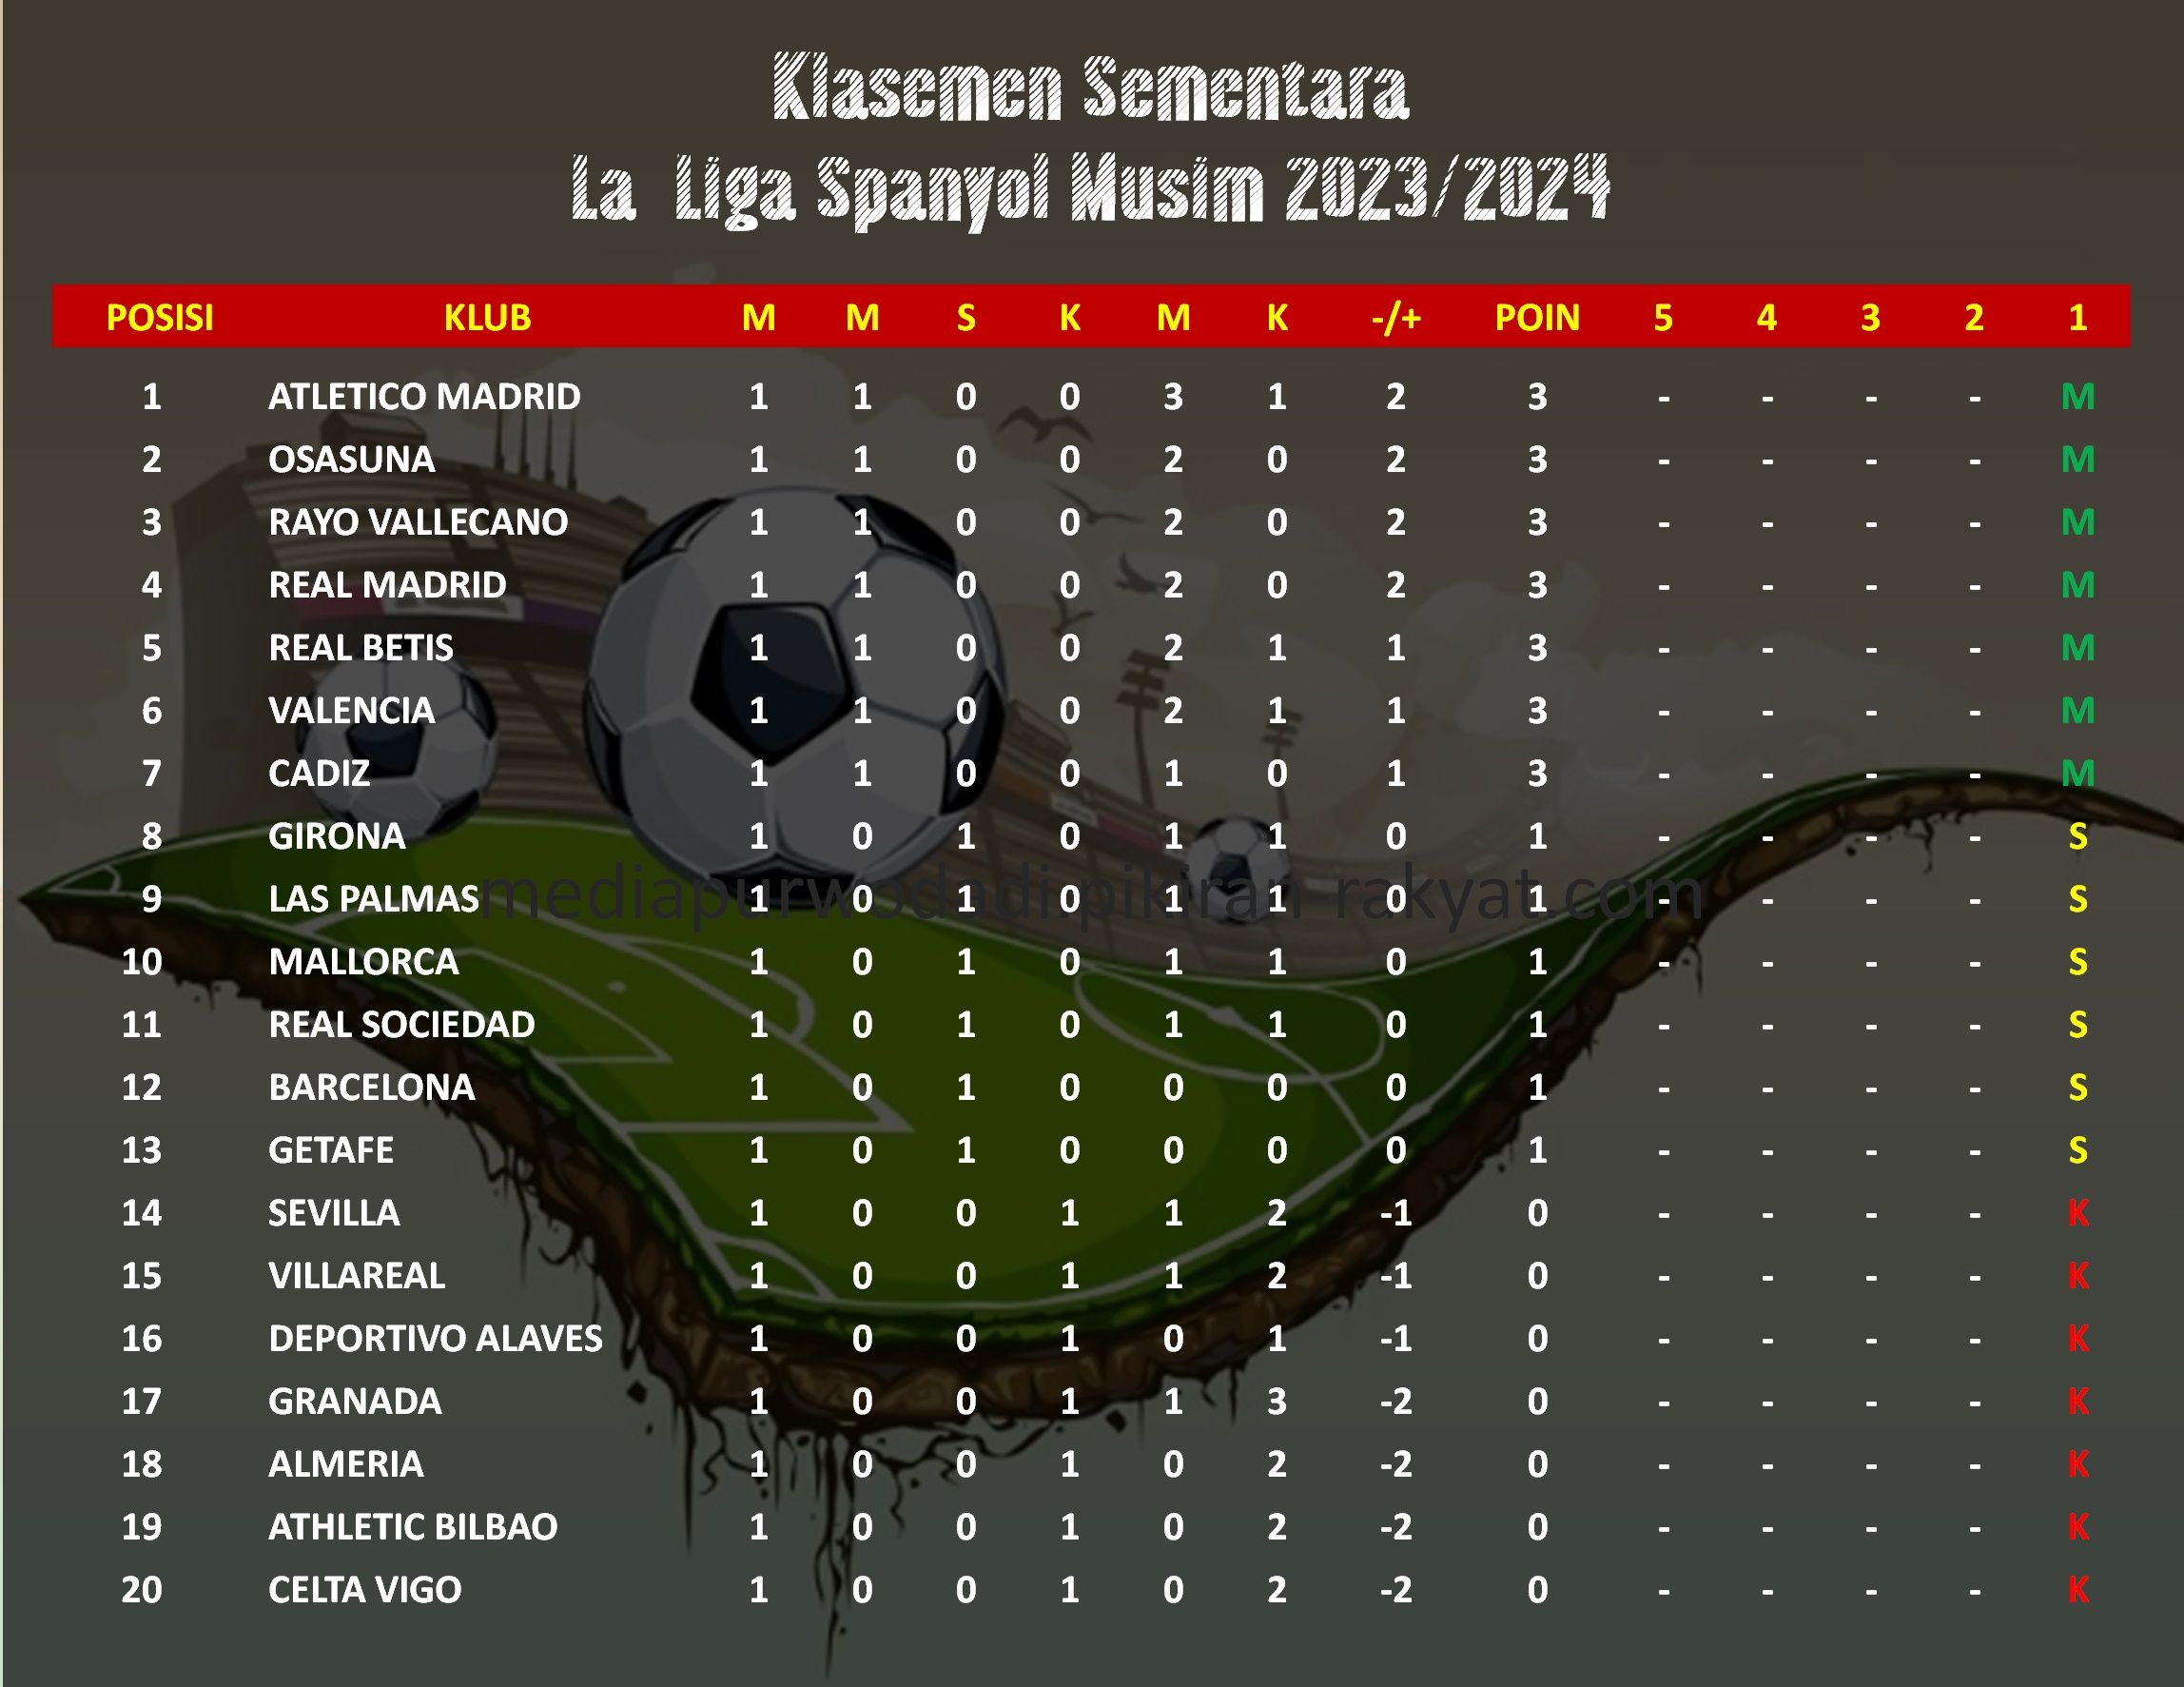 daftar klasemen sementara La Liga Spanyol musim 2023/2024.